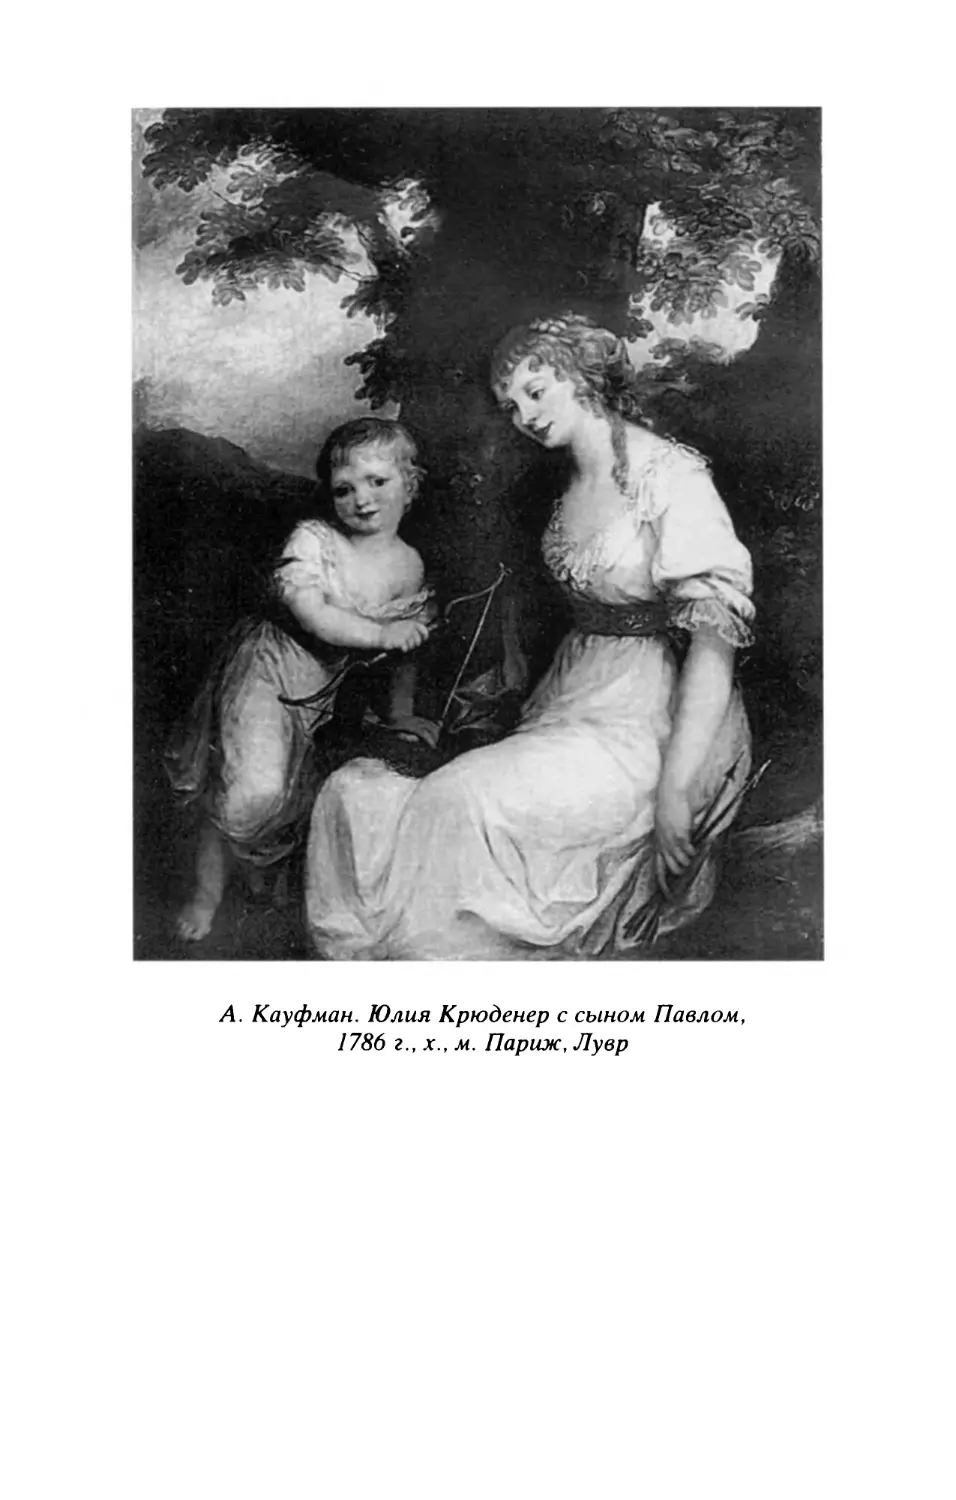 Л. Кауфман. Юлия Крюденер с сыном Павлом, 1786 г.